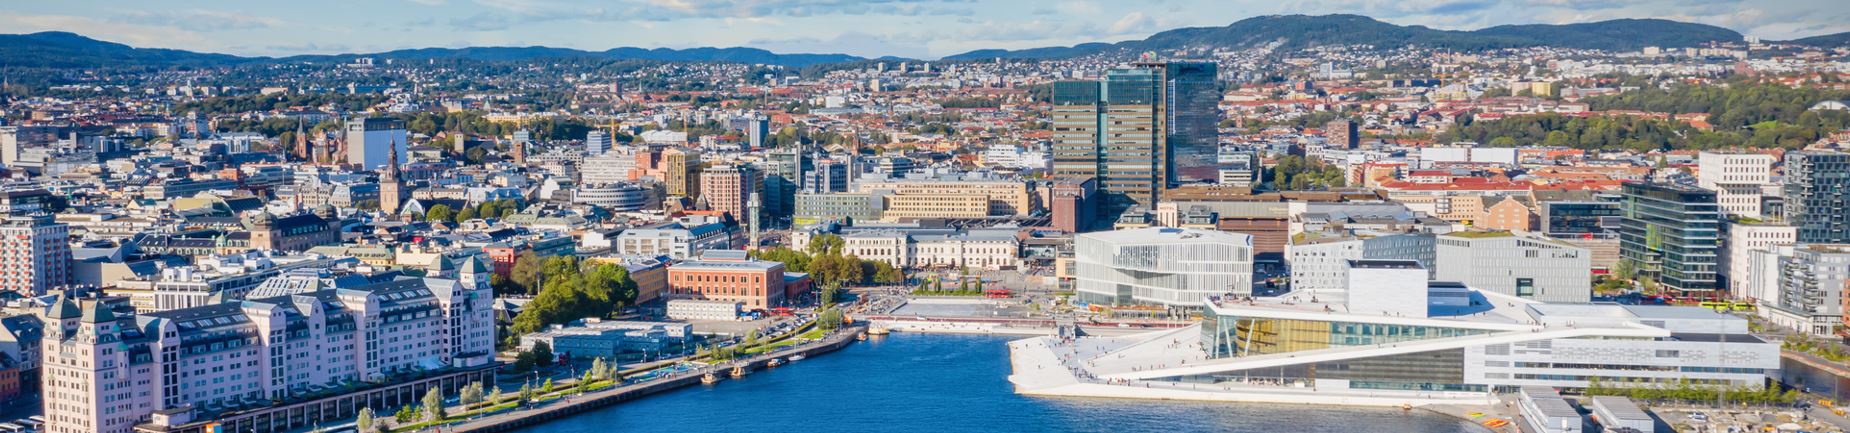 Oslo overblikk med opera og by foto GettyImages.JPG